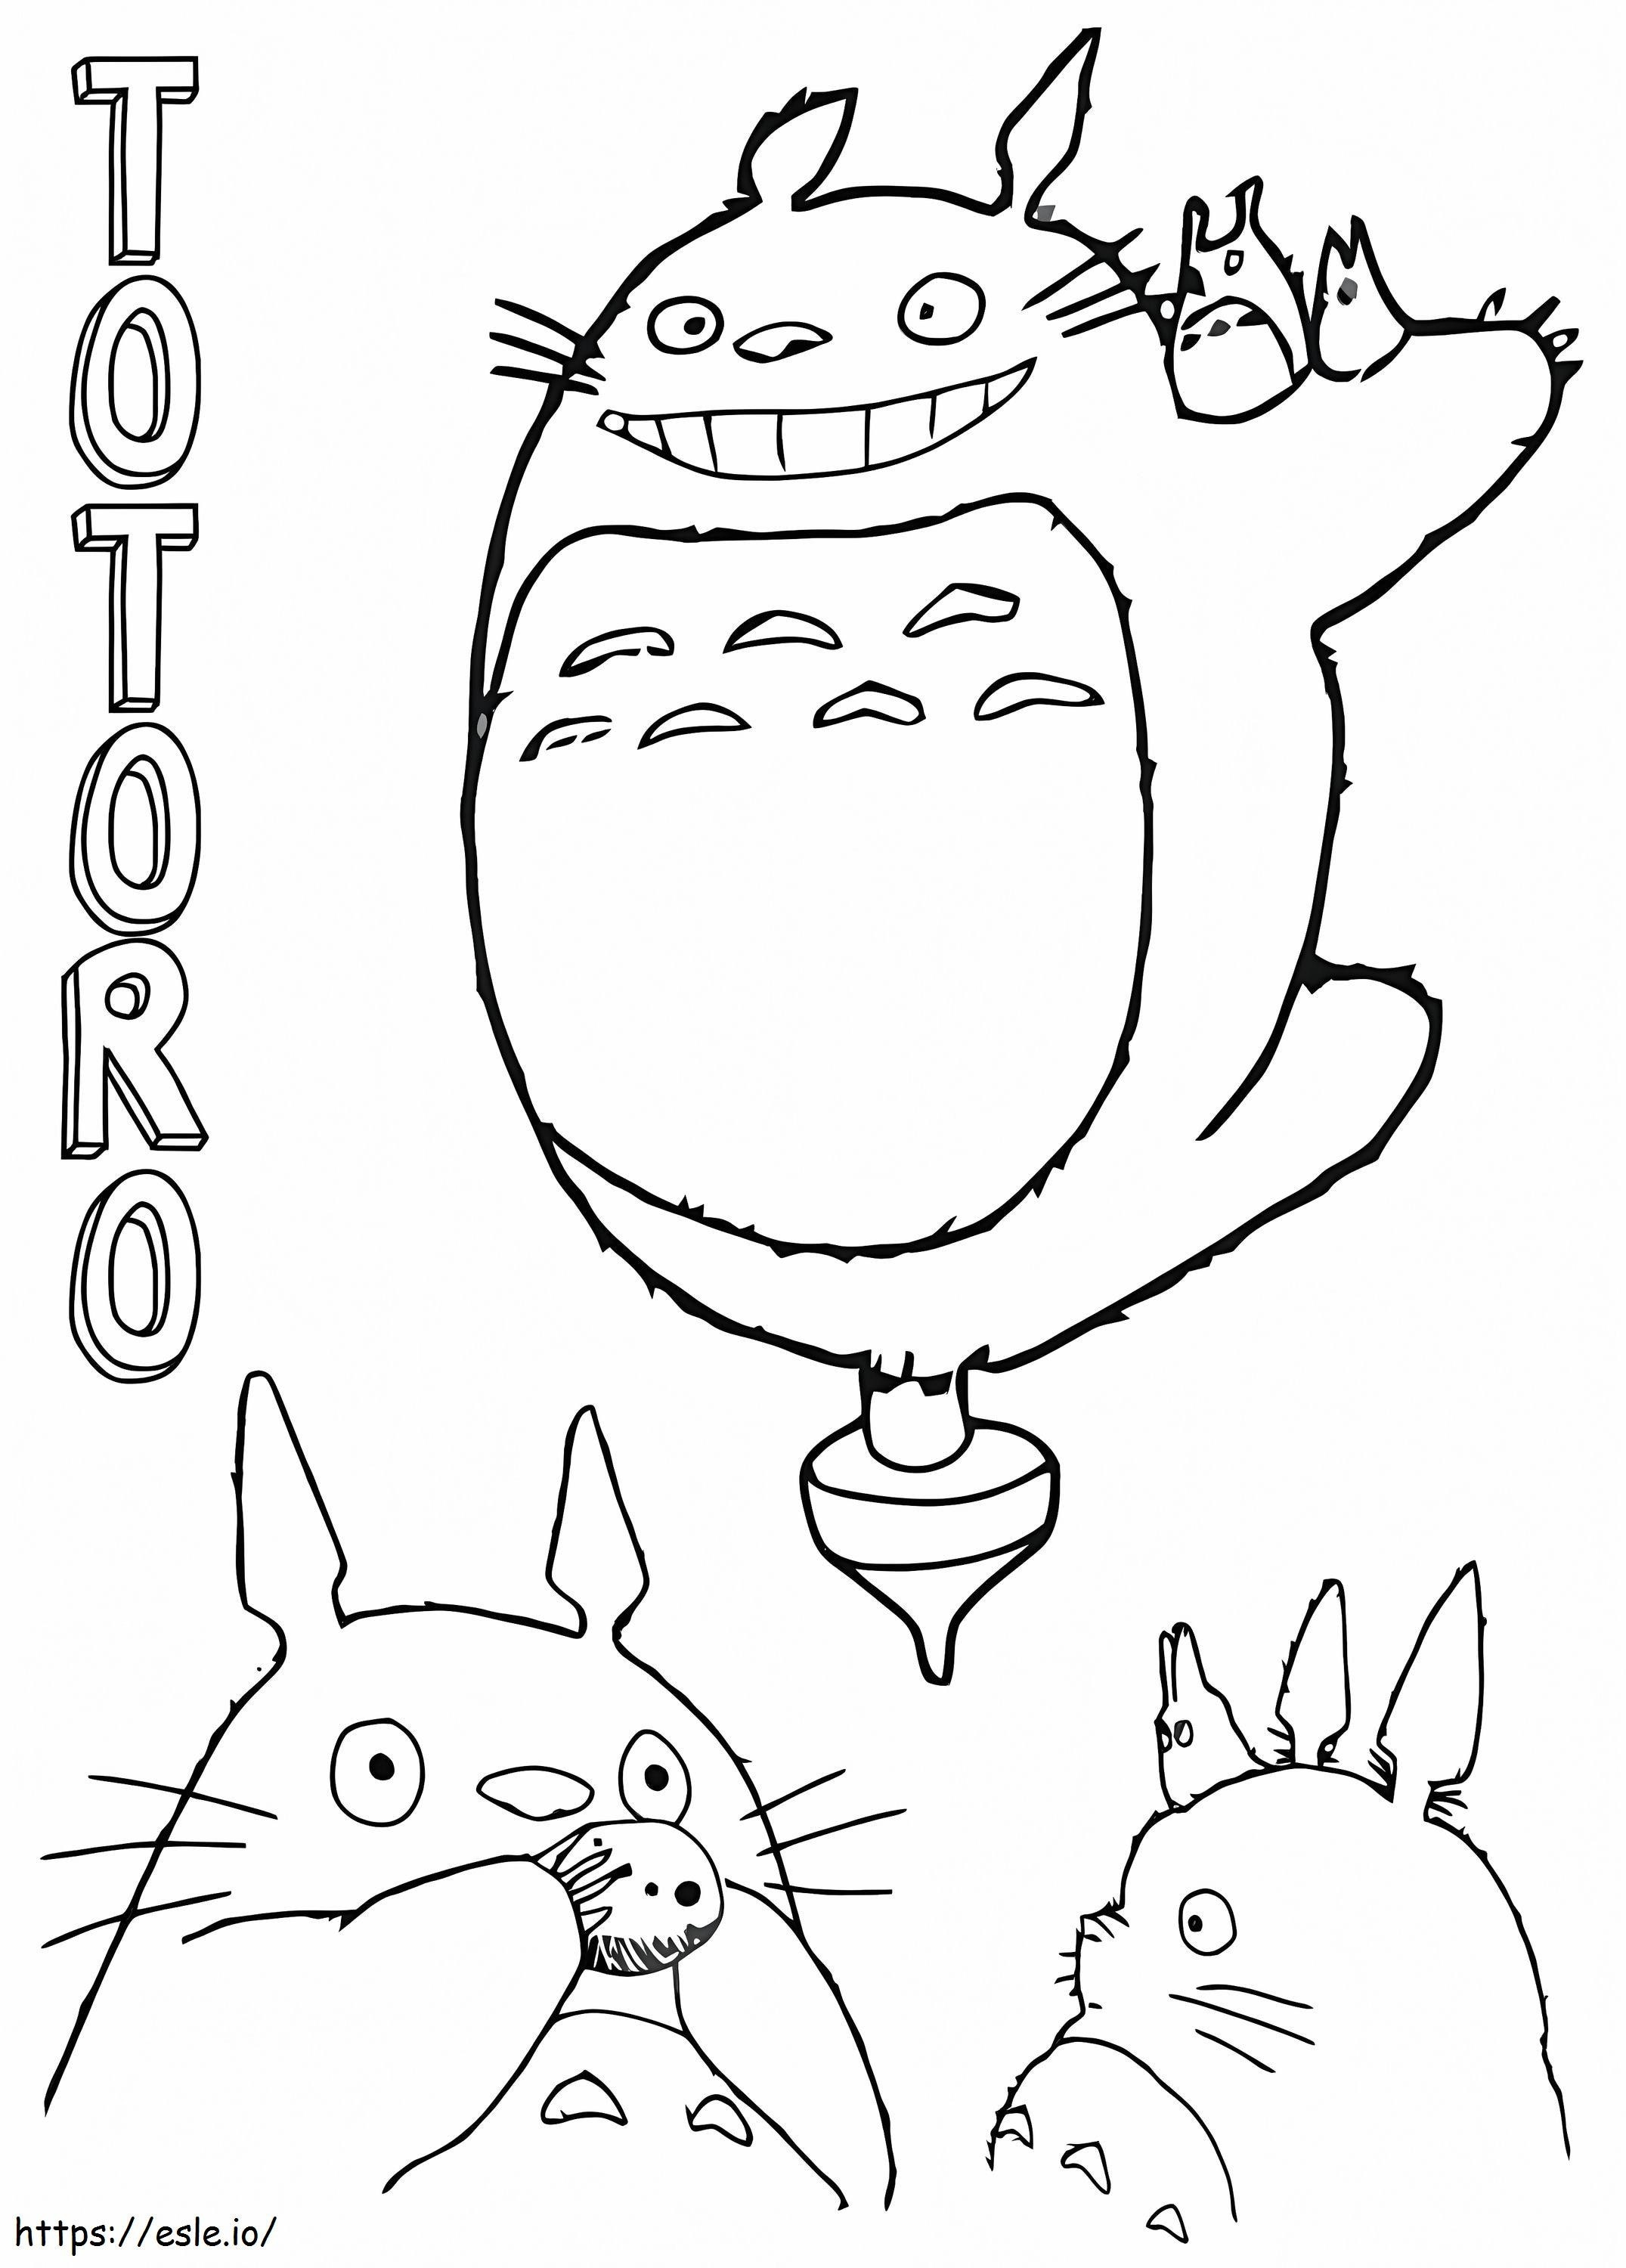 Diversión amigable con Totoro para colorear